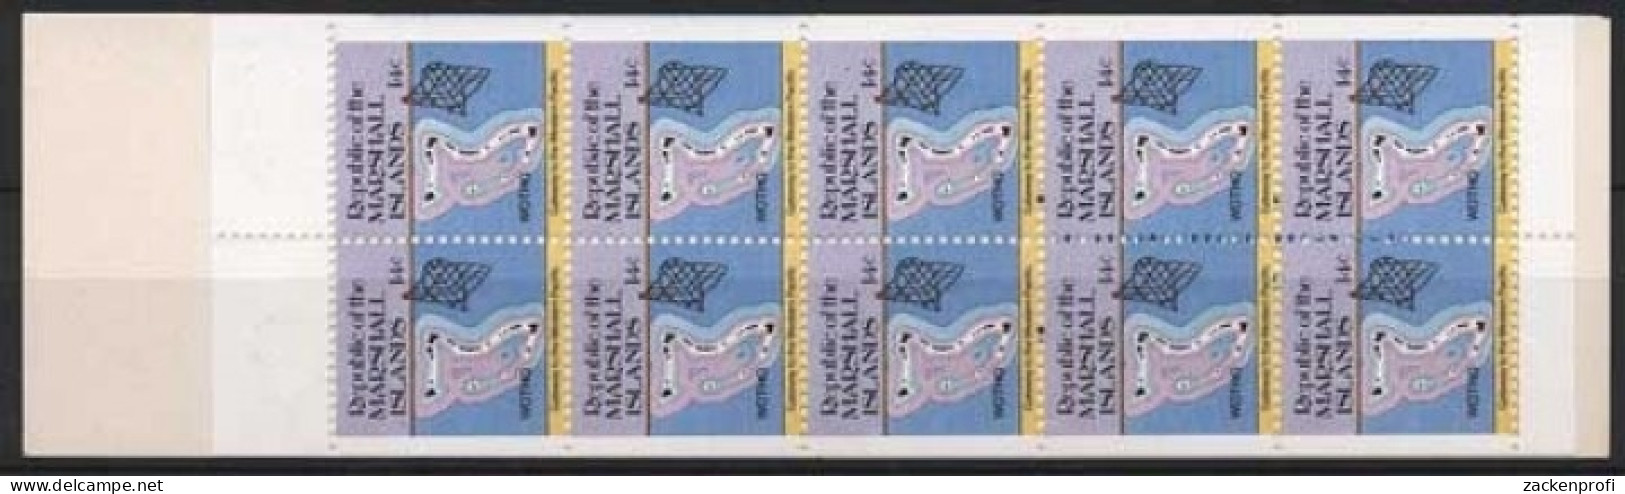 Marshall-Inseln 1985 Freimarken: Inselkarten 40 MH Postfrisch (C21495) - Marshalleilanden